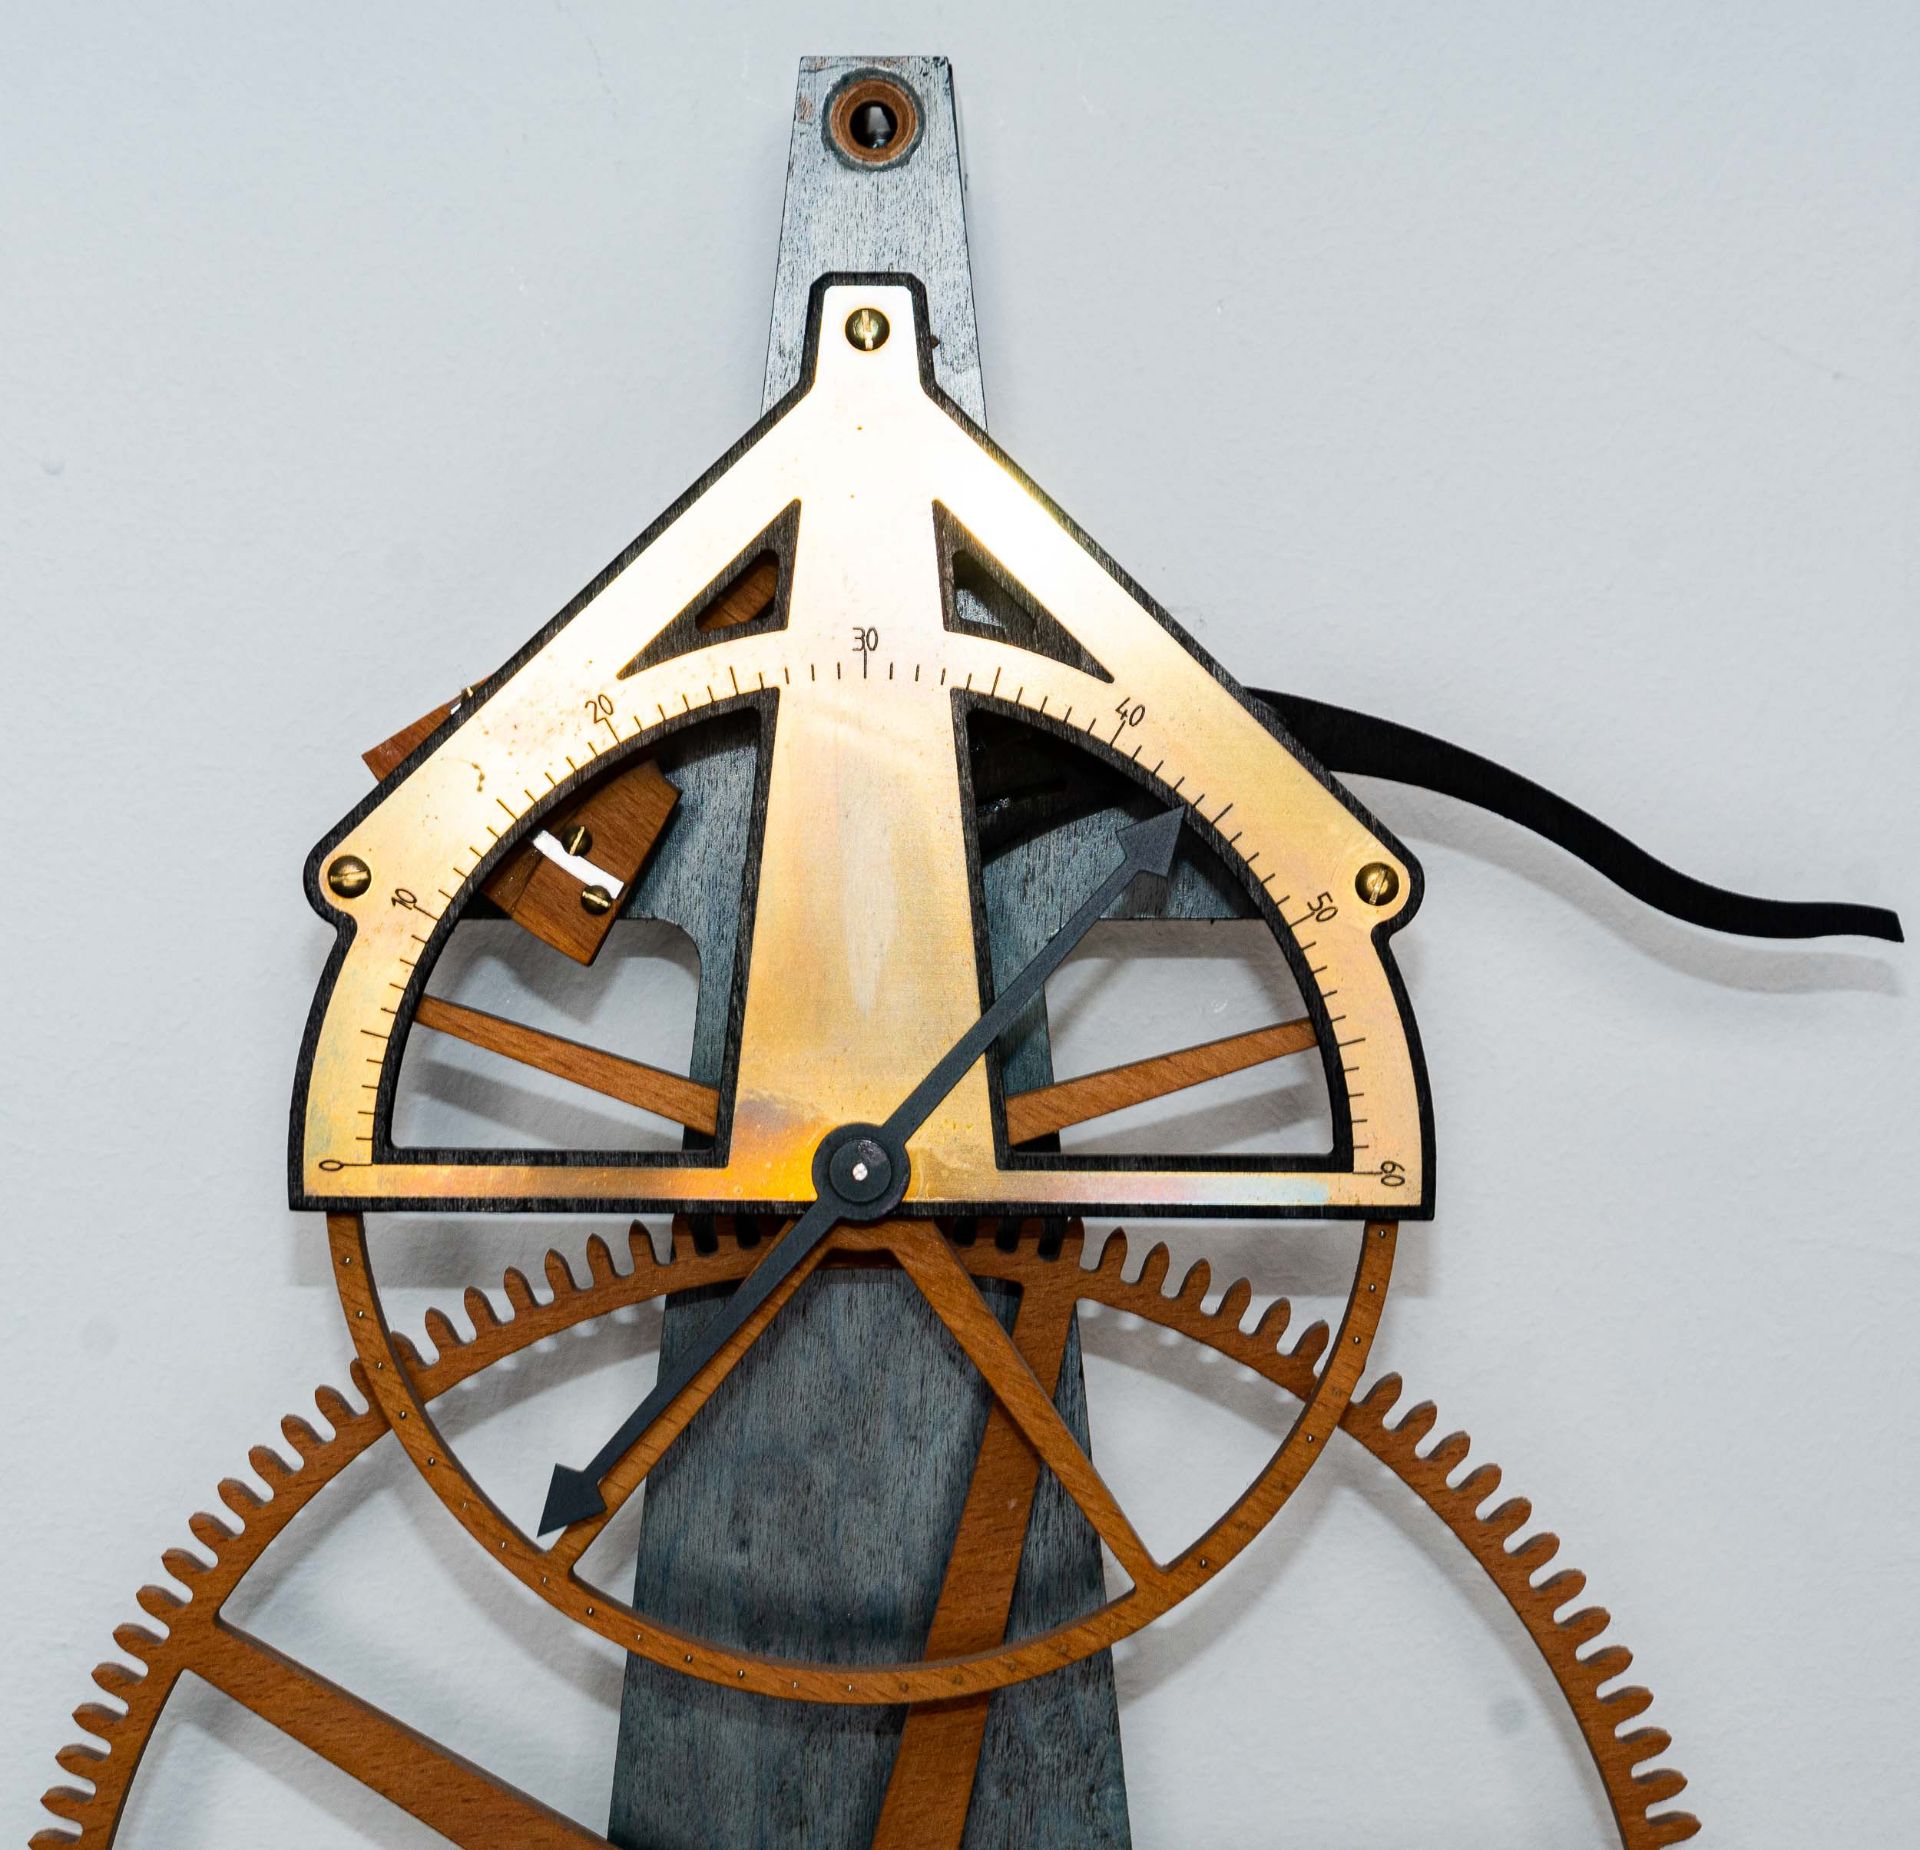 Hölzerne Wanduhr, 2 gewichtiges hölzernes Uhrwerk der Marke "Damm & Wolff", rüc - Bild 8 aus 12